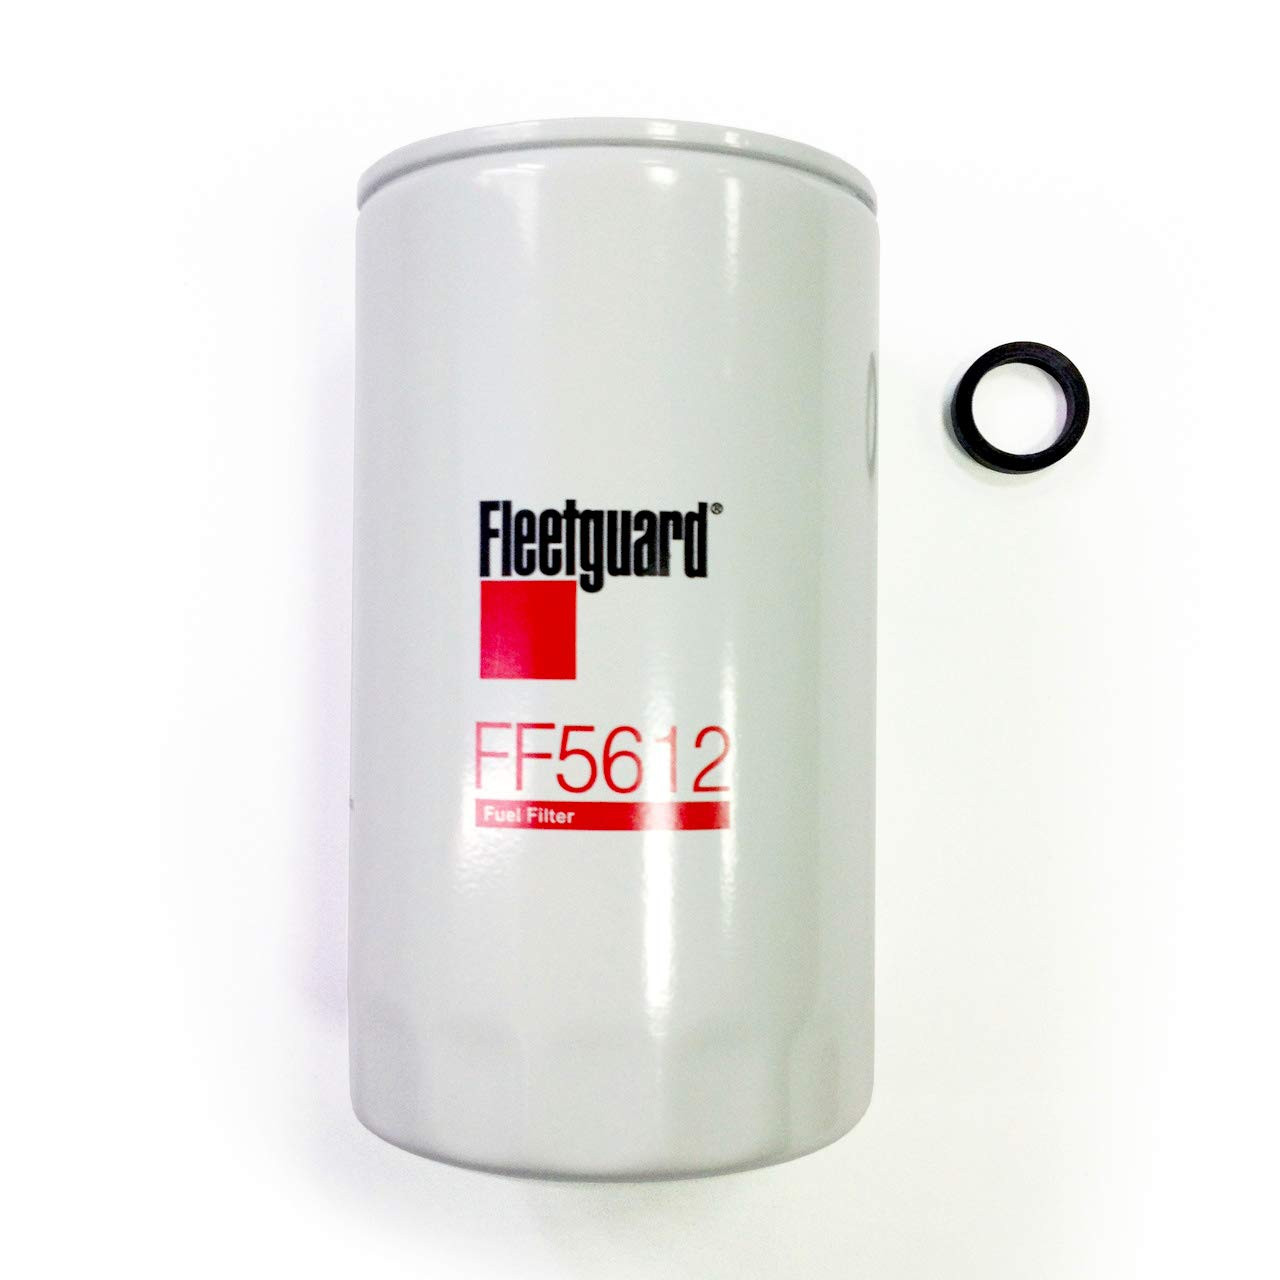 Fleetguard FF5612 Fuel Filter Spin-on